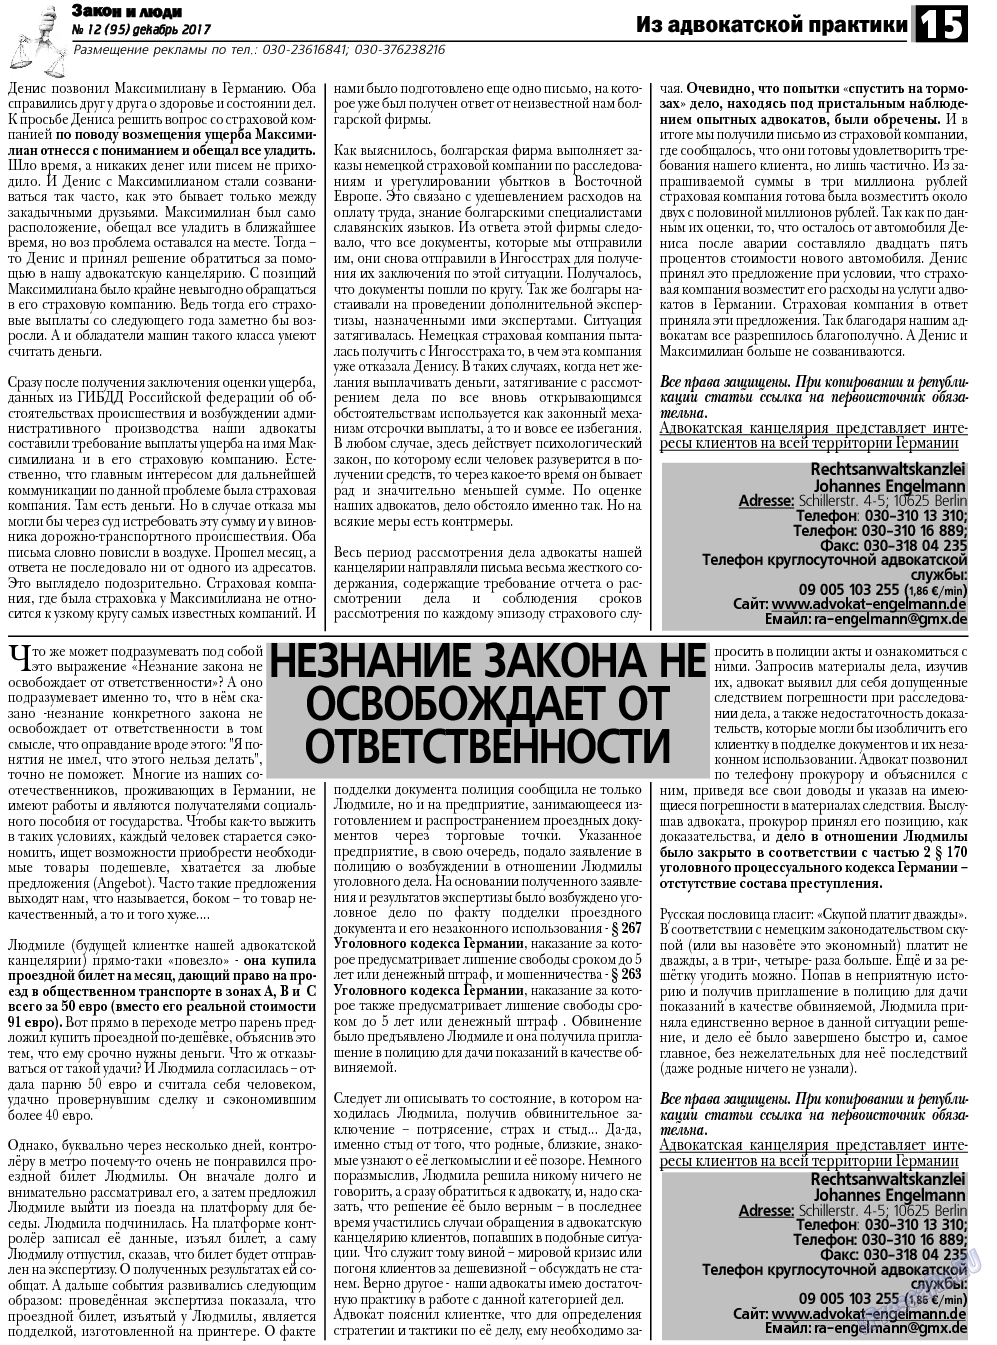 Закон и люди, газета. 2017 №12 стр.15